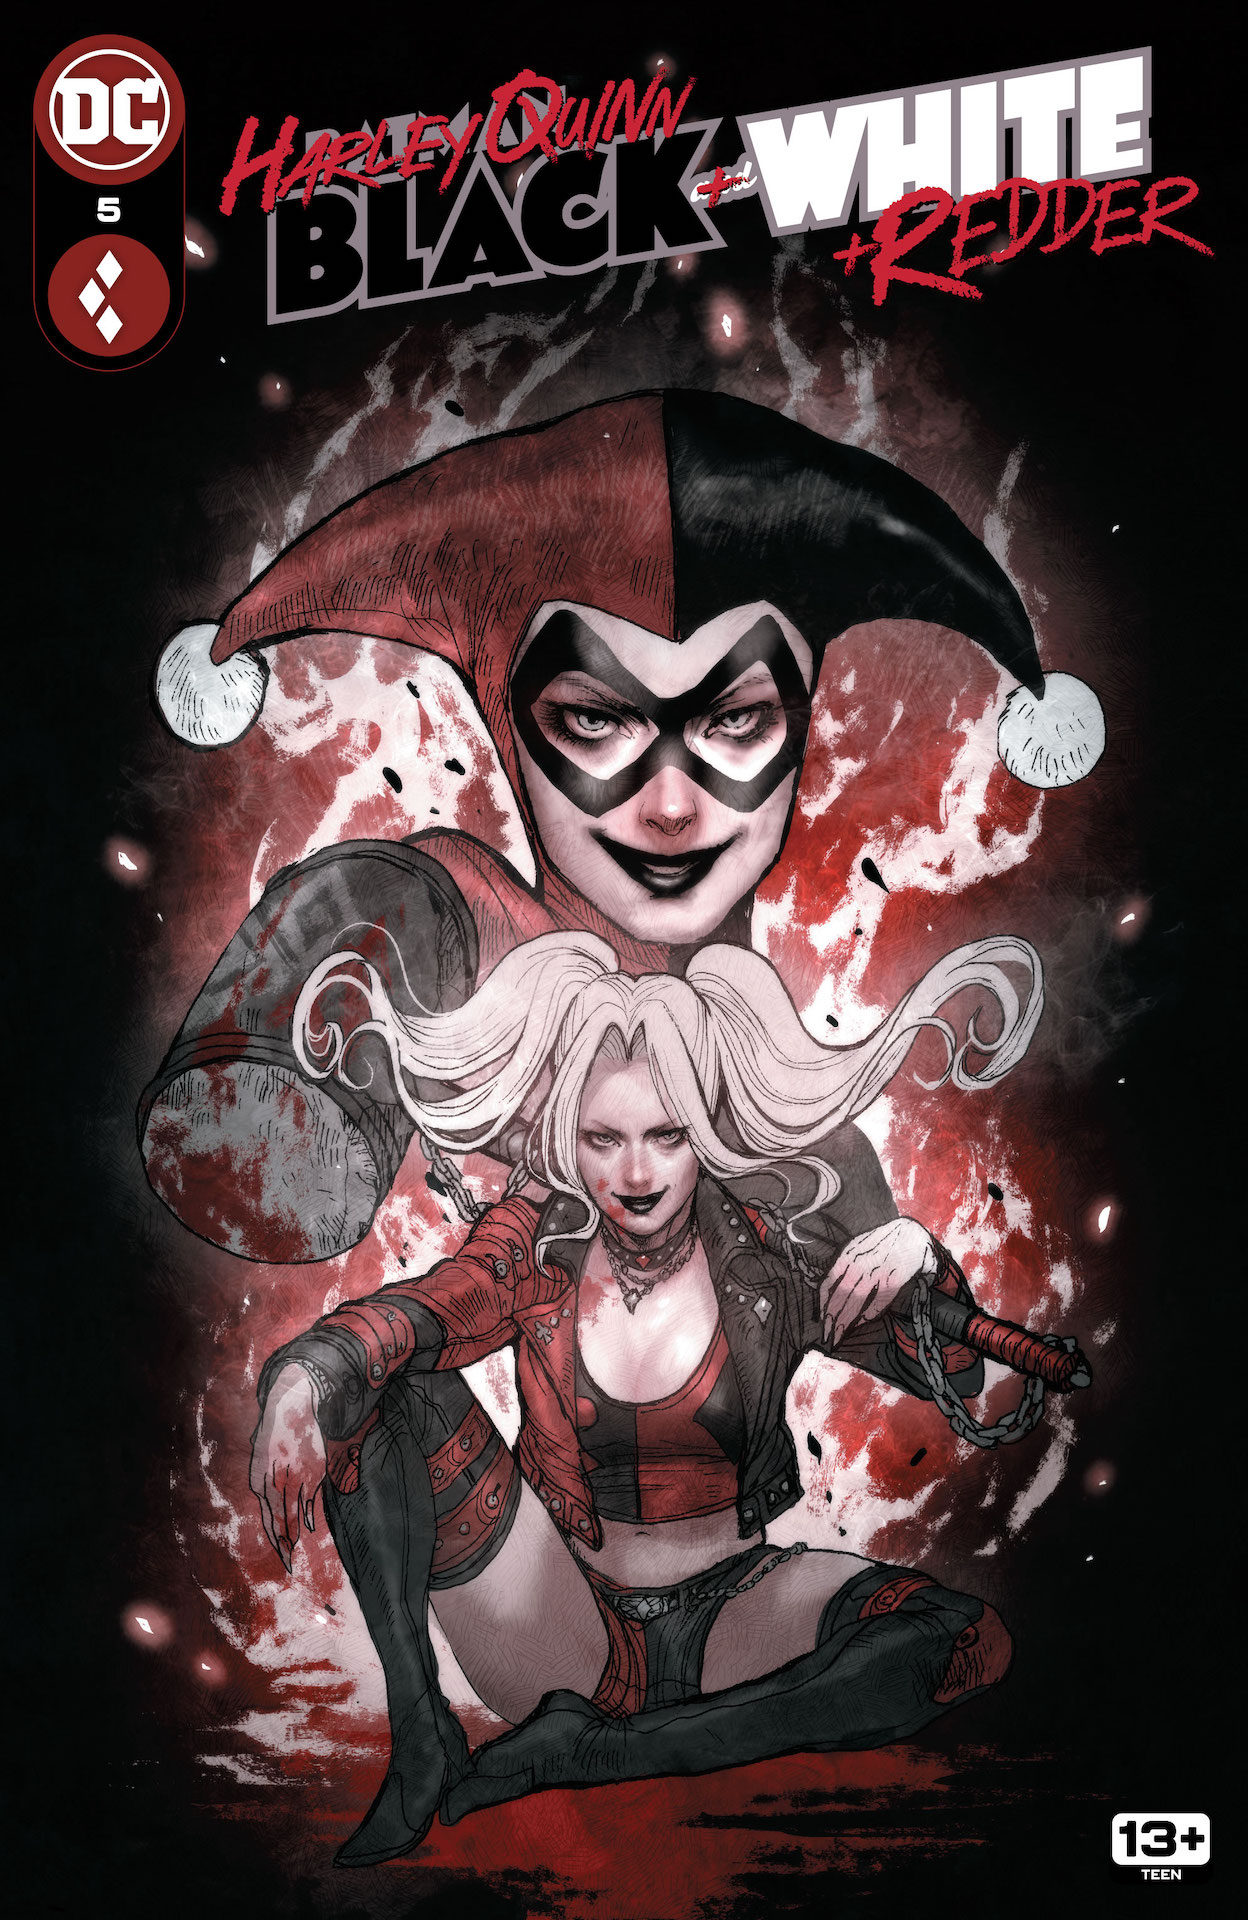 DC Preview: Harley Quinn: Black + White + Redder #5